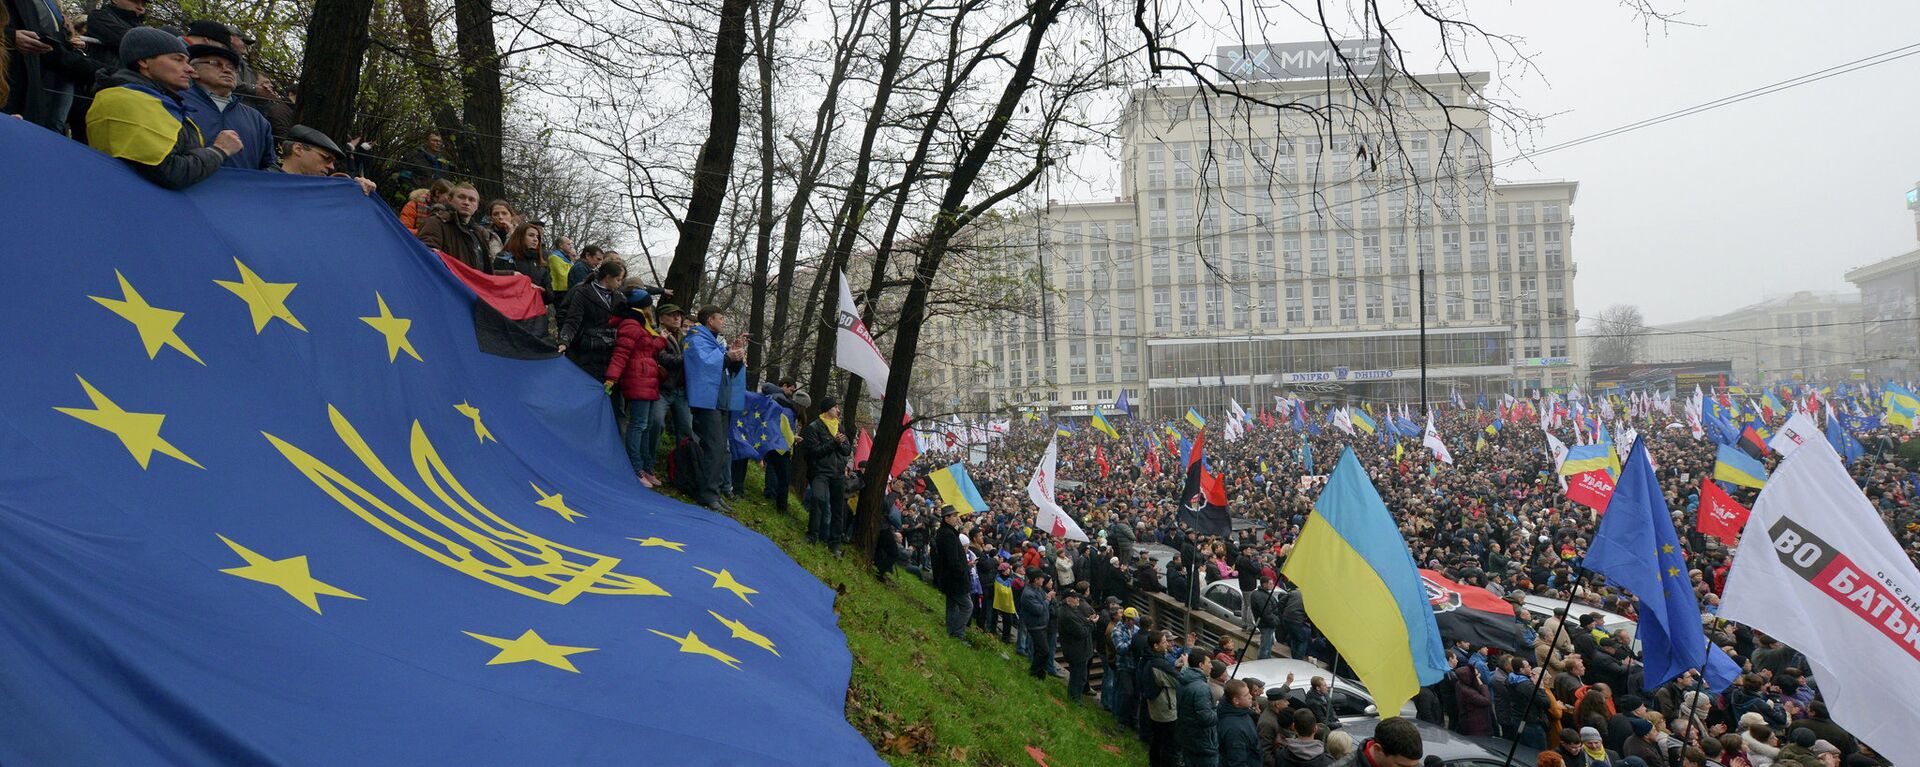 Massivni proevropski miting u Kijevu. Novembar 24, 2013. - Sputnik Srbija, 1920, 24.06.2022